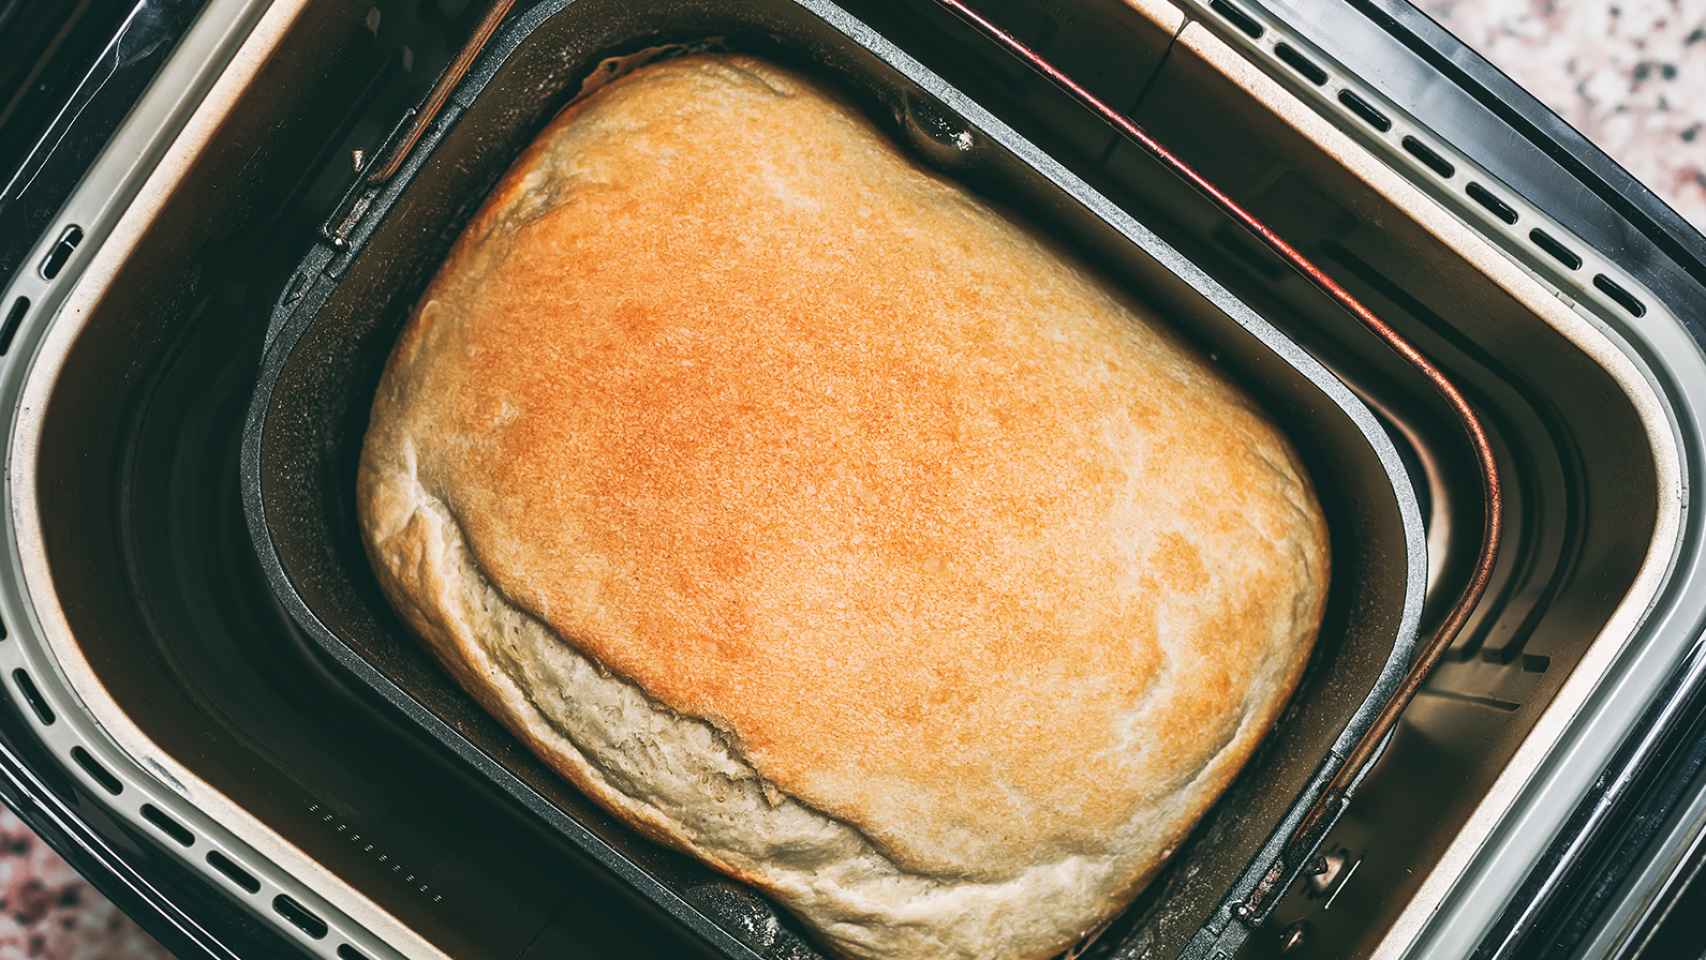 Un pan casero cociéndose en una panificadora.